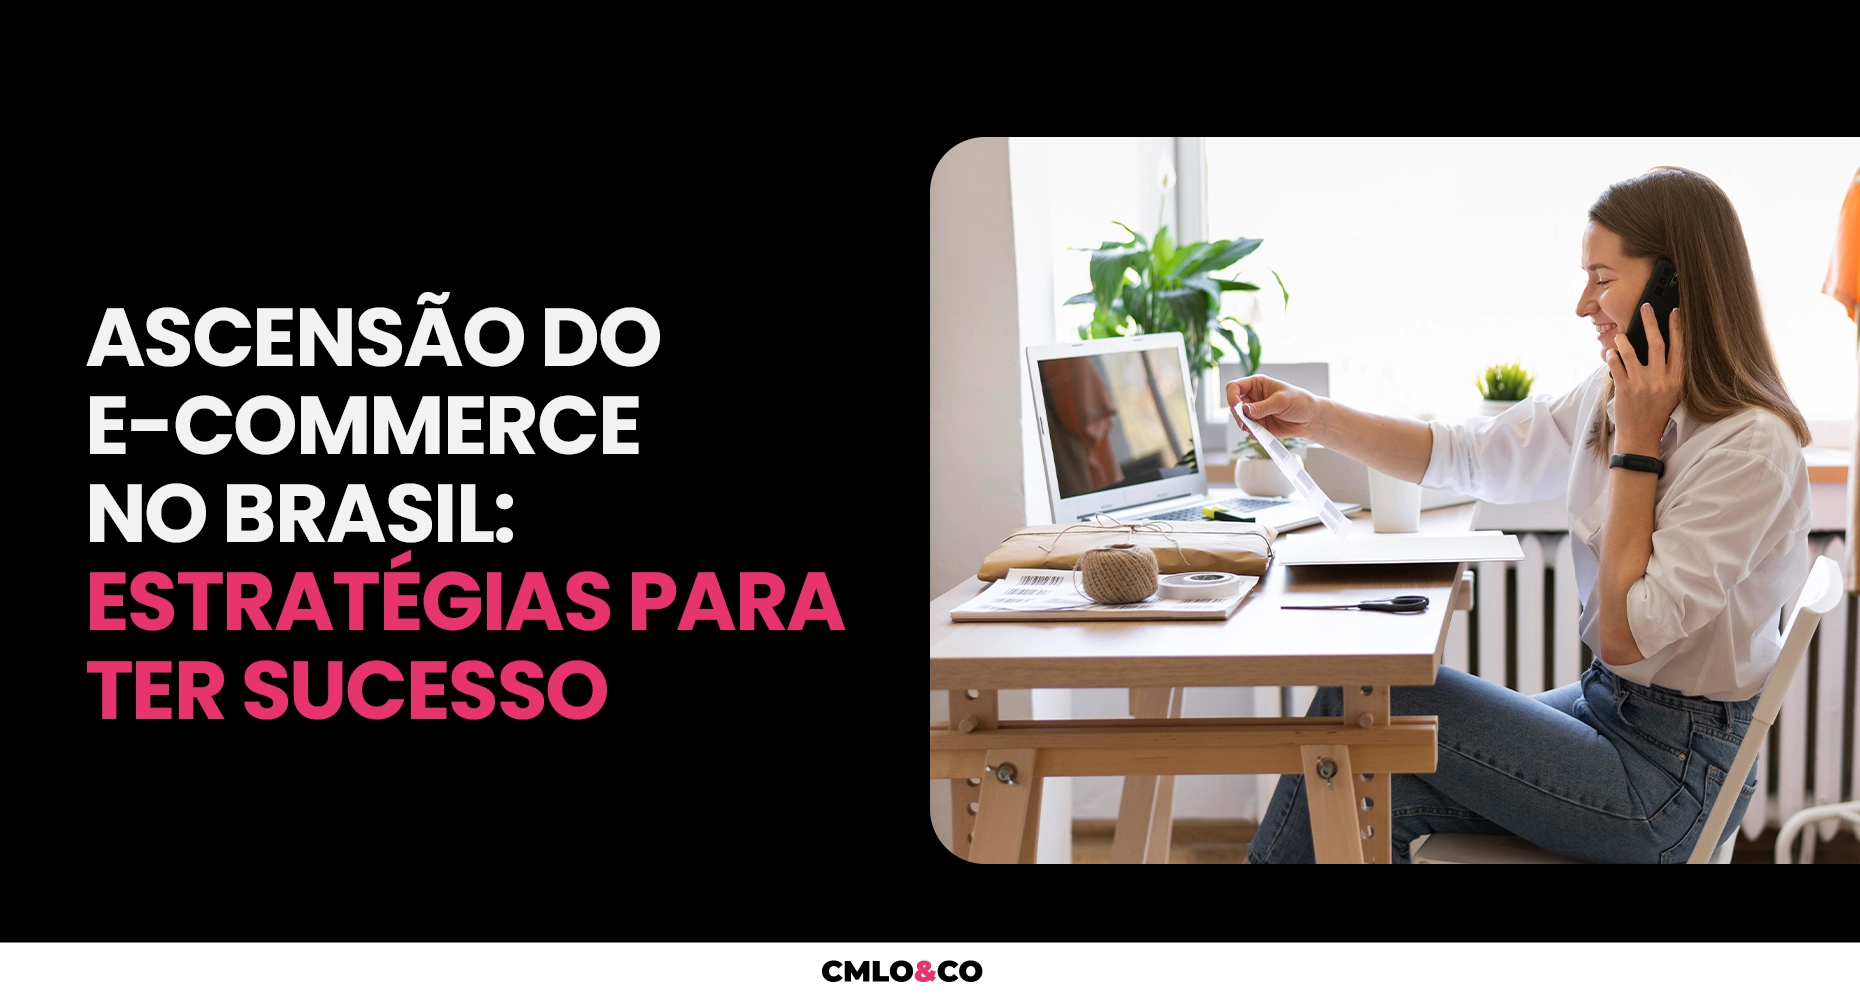 Ascensão do E-commerce no Brasil: estratégias para ter sucesso